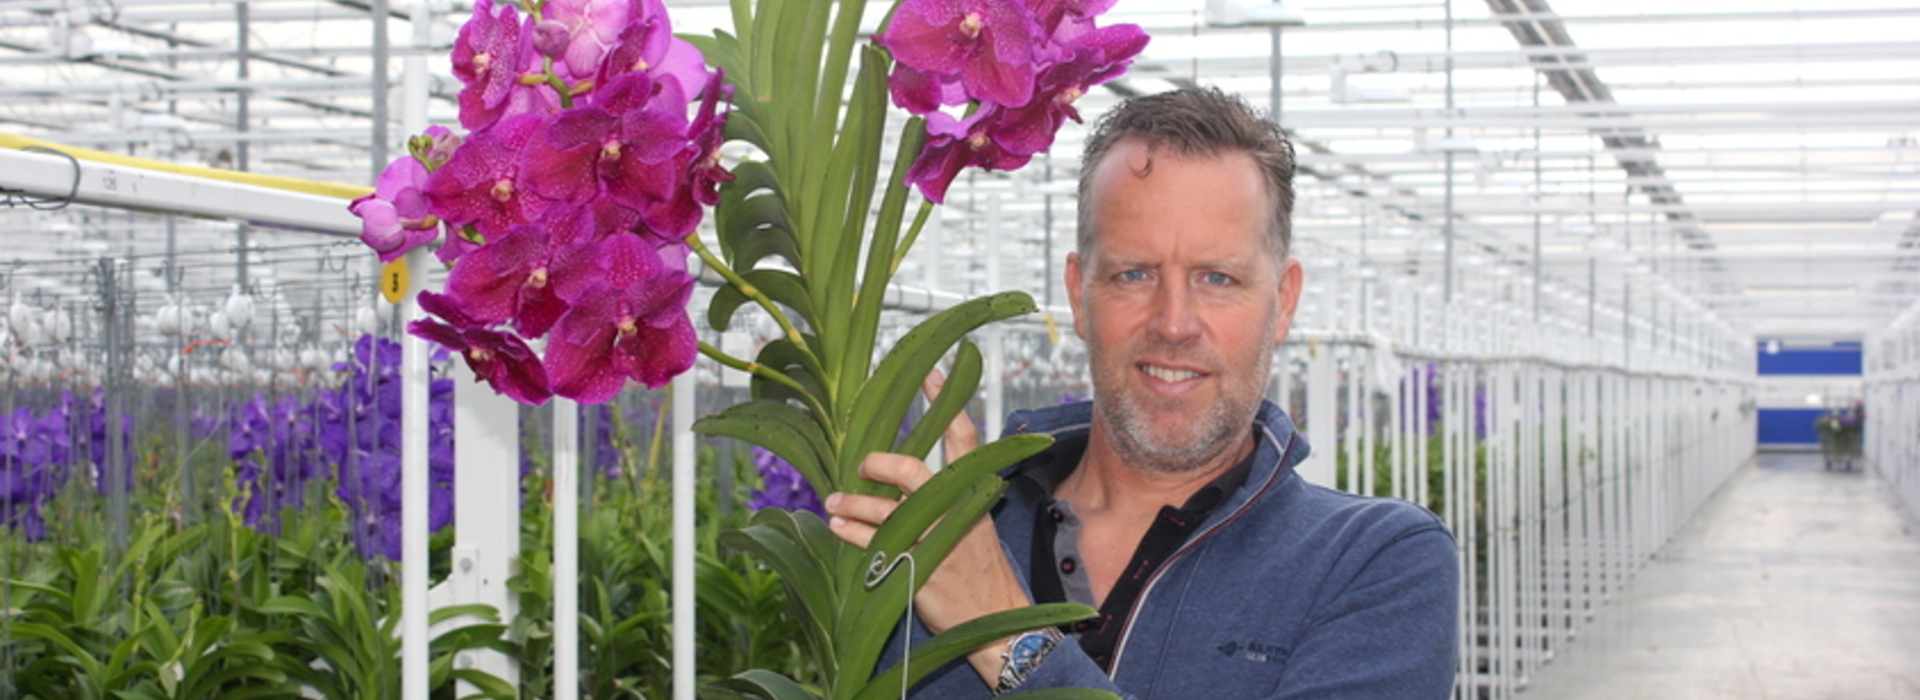 Primeur: Kweker van exclusieve oerwoud orchidee geeft kleur aan Kom in de Kas #JODT